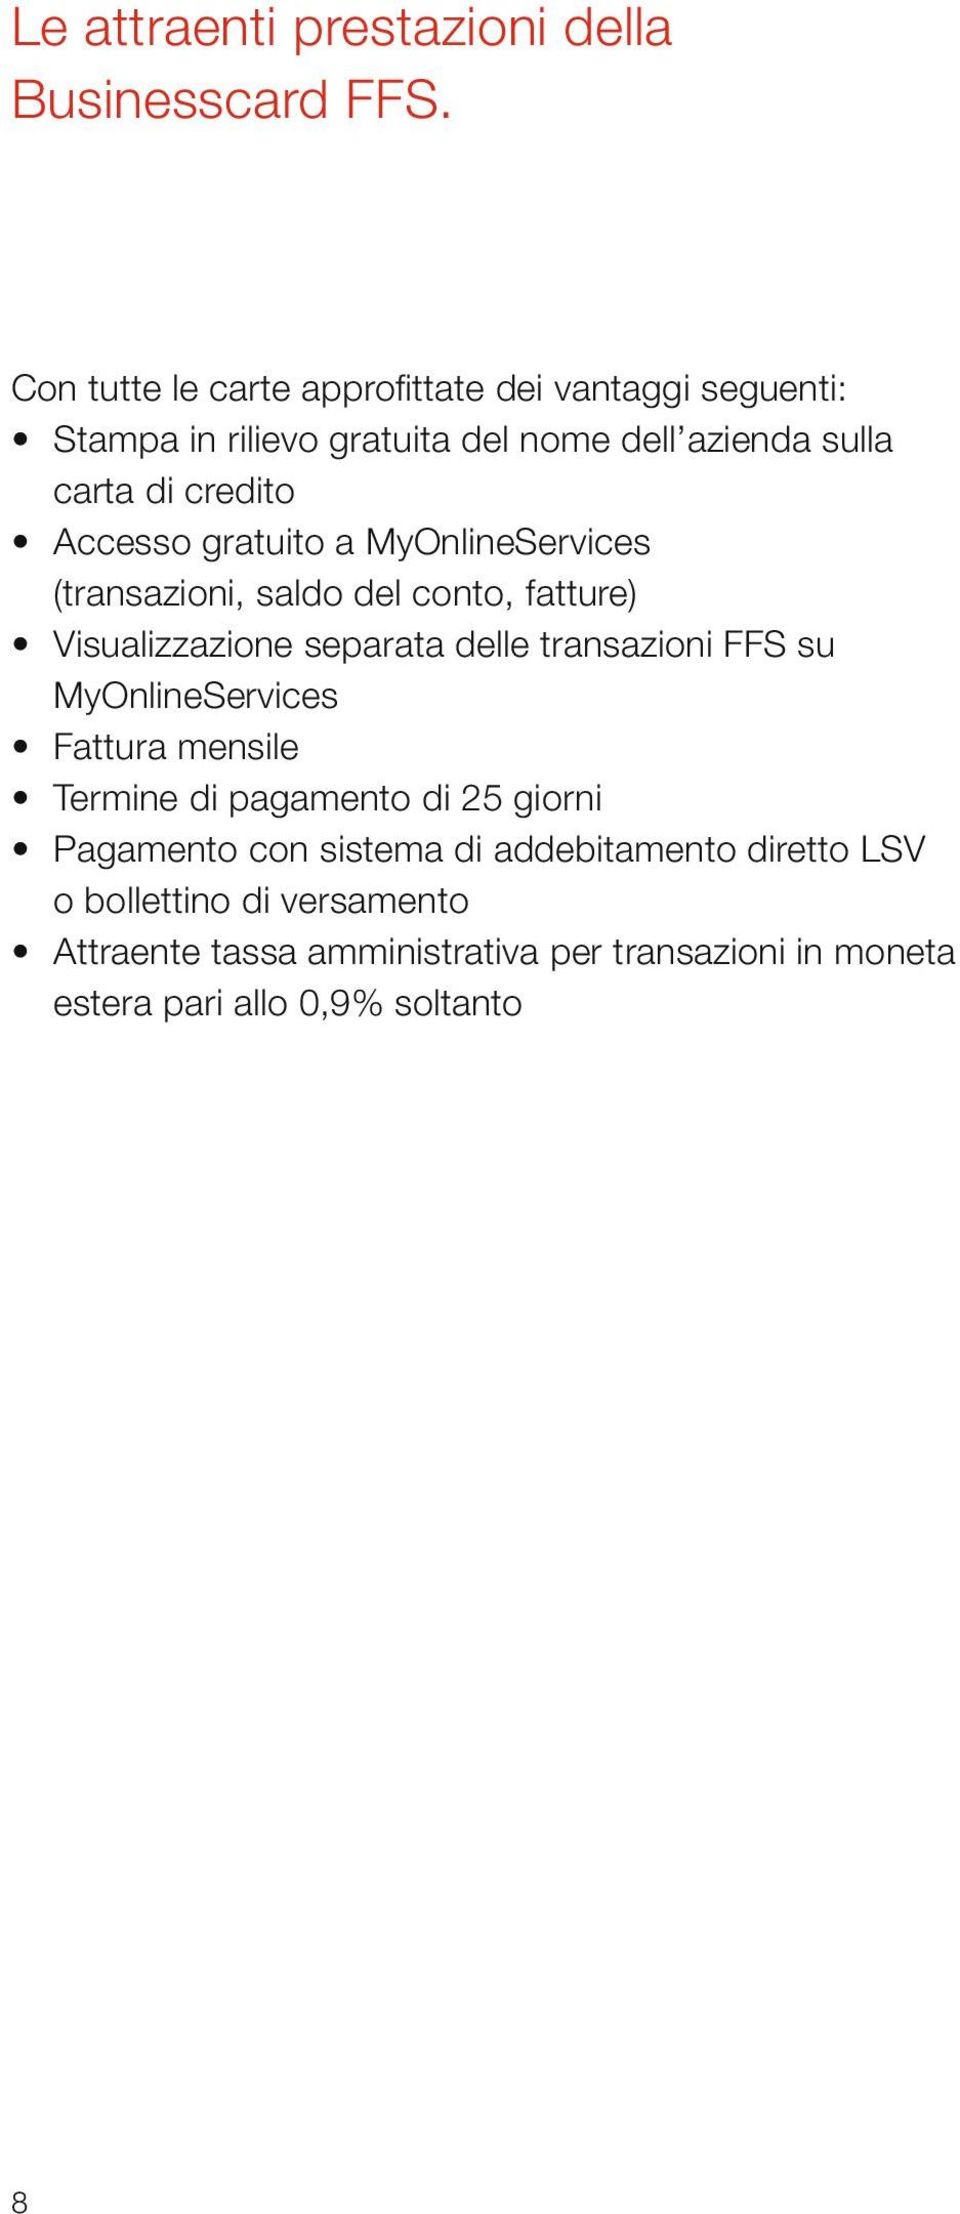 Accesso gratuito a MyOnlineServices (transazioni, saldo del conto, fatture) Visualizzazione separata delle transazioni FFS su